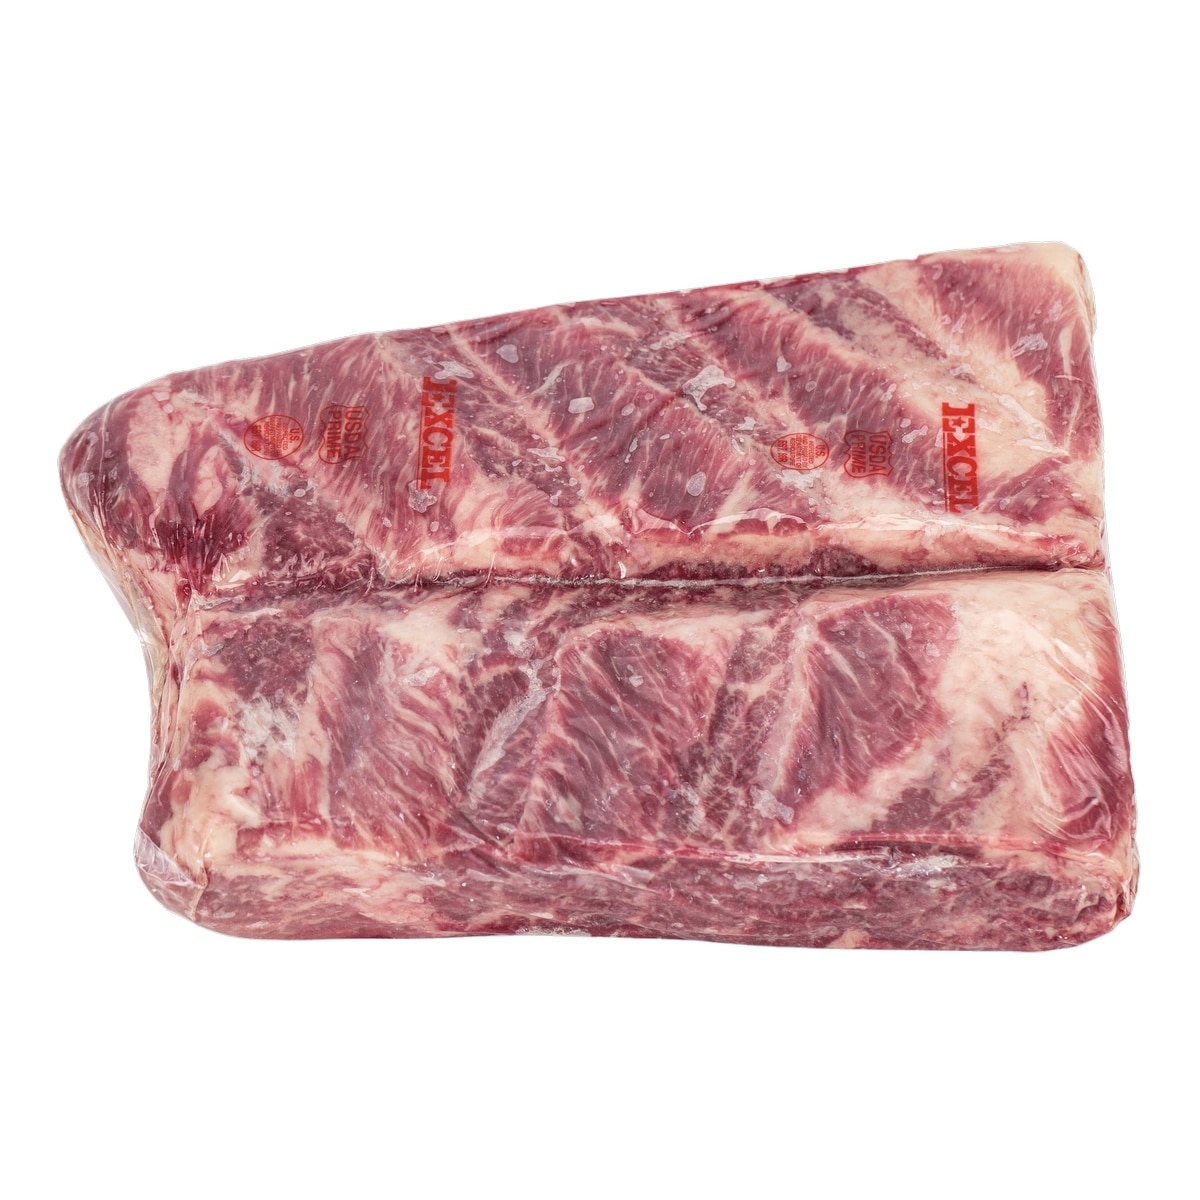 美國頂級冷凍翼板肉 21公斤 / 箱